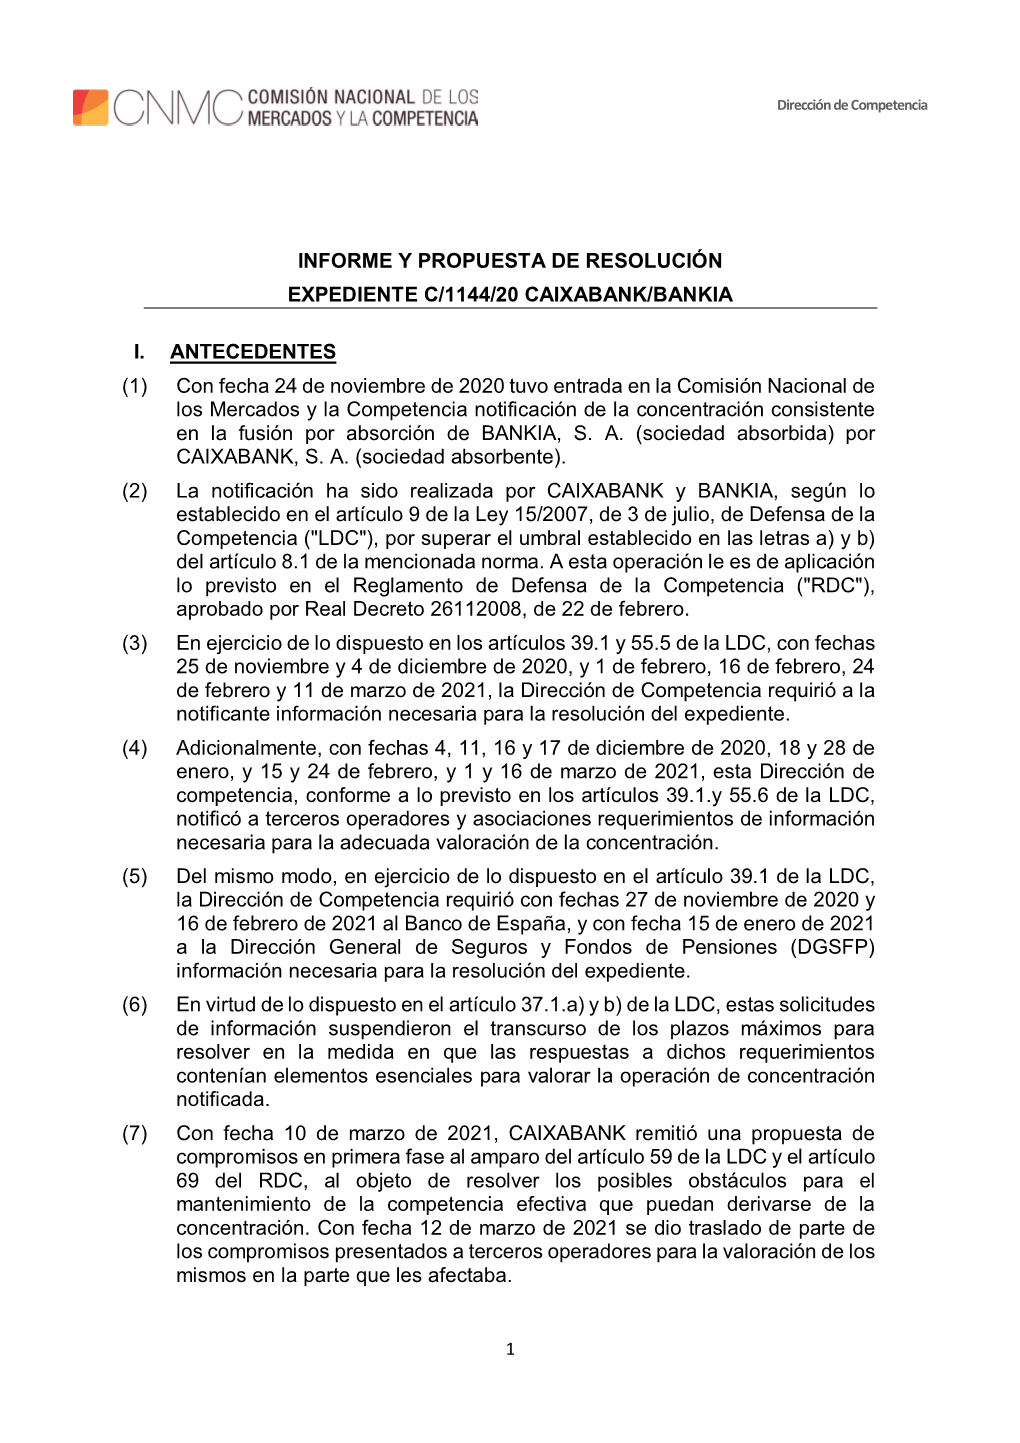 Informe Y Propuesta De Resolución Expediente C/1144/20 Caixabank/Bankia